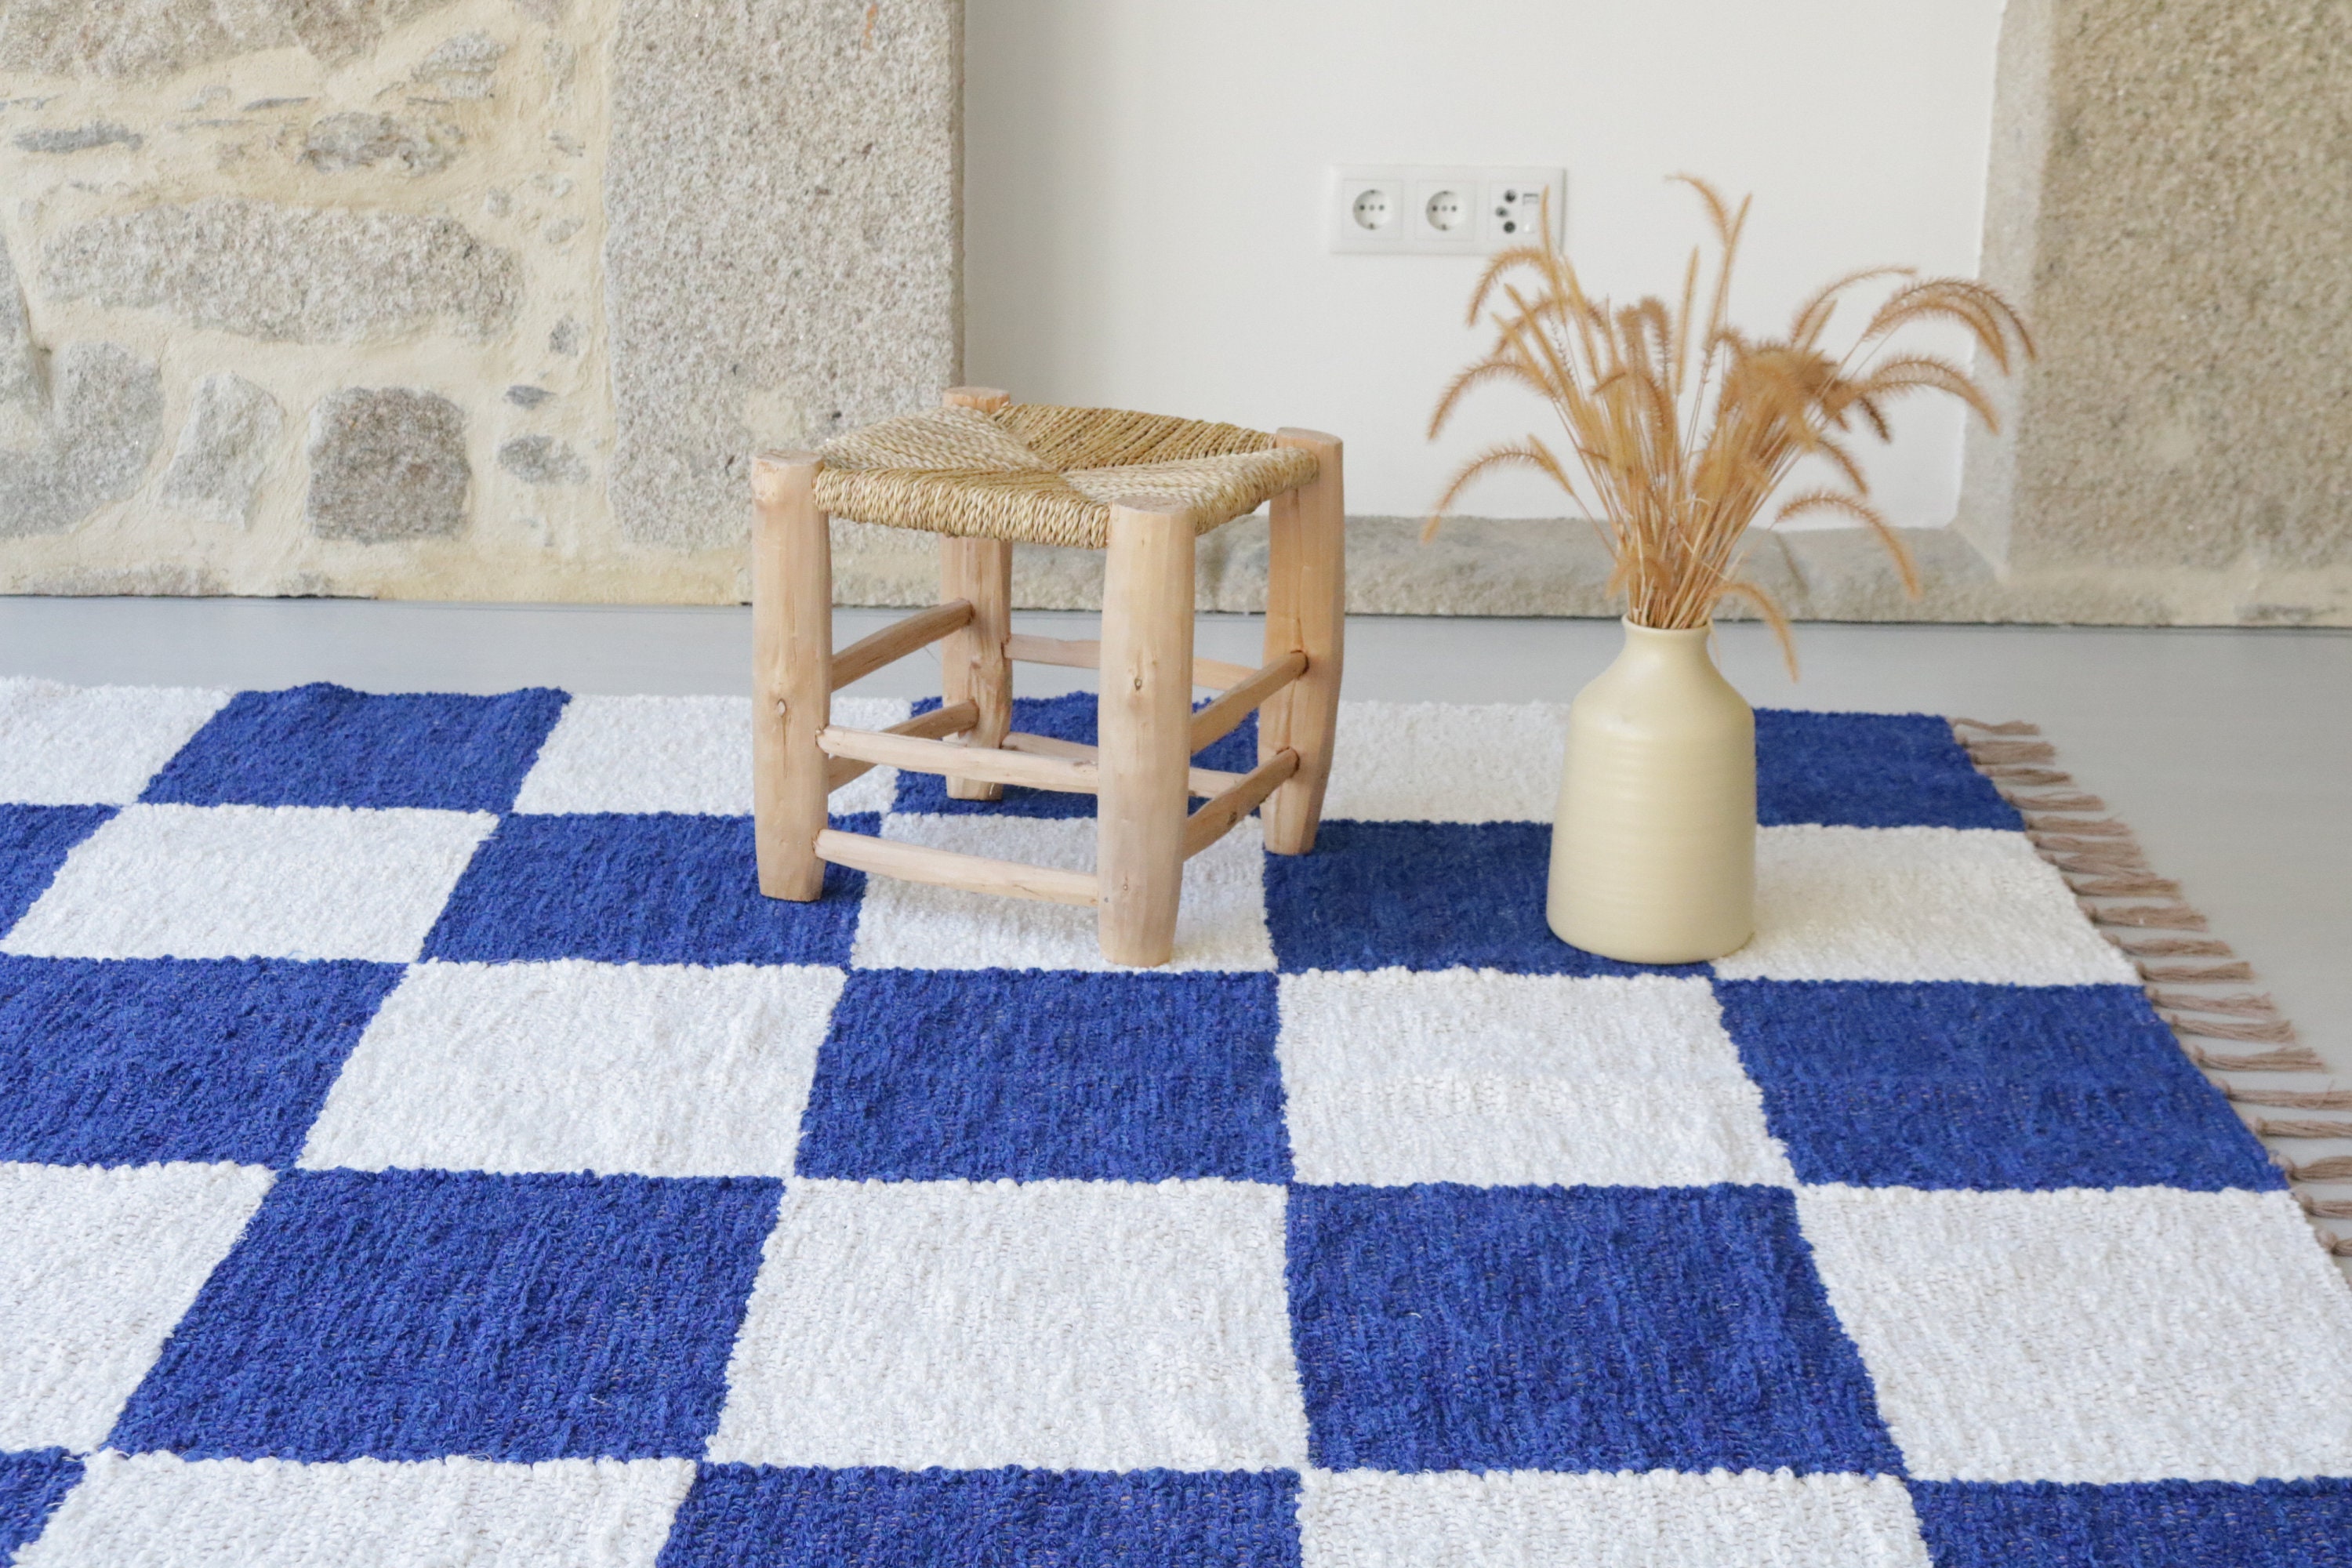 ZOLA Art Mat, Blue/red Vinyl Protective Mat, Persian/turkish Design,  Waterproof Floor Mat, Vinyl Area Rug, Home Ideas, Bathroom, Kitchen 